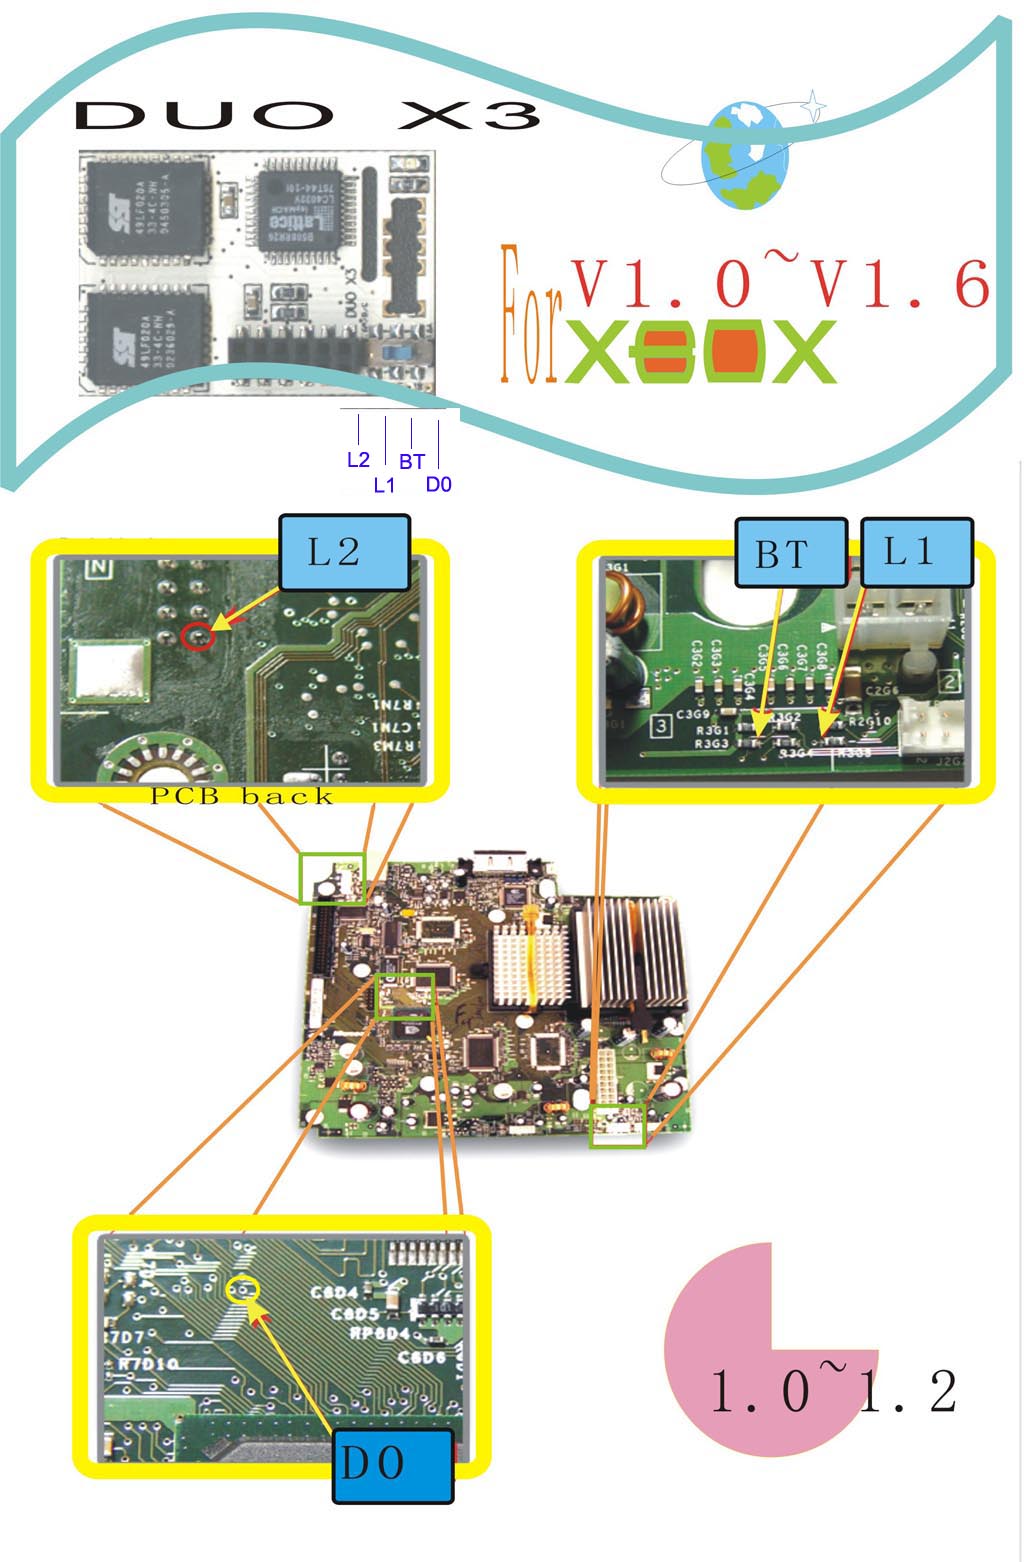 DuoX 3 chip bekötése 1.0-1.2 verziójú Xboxba